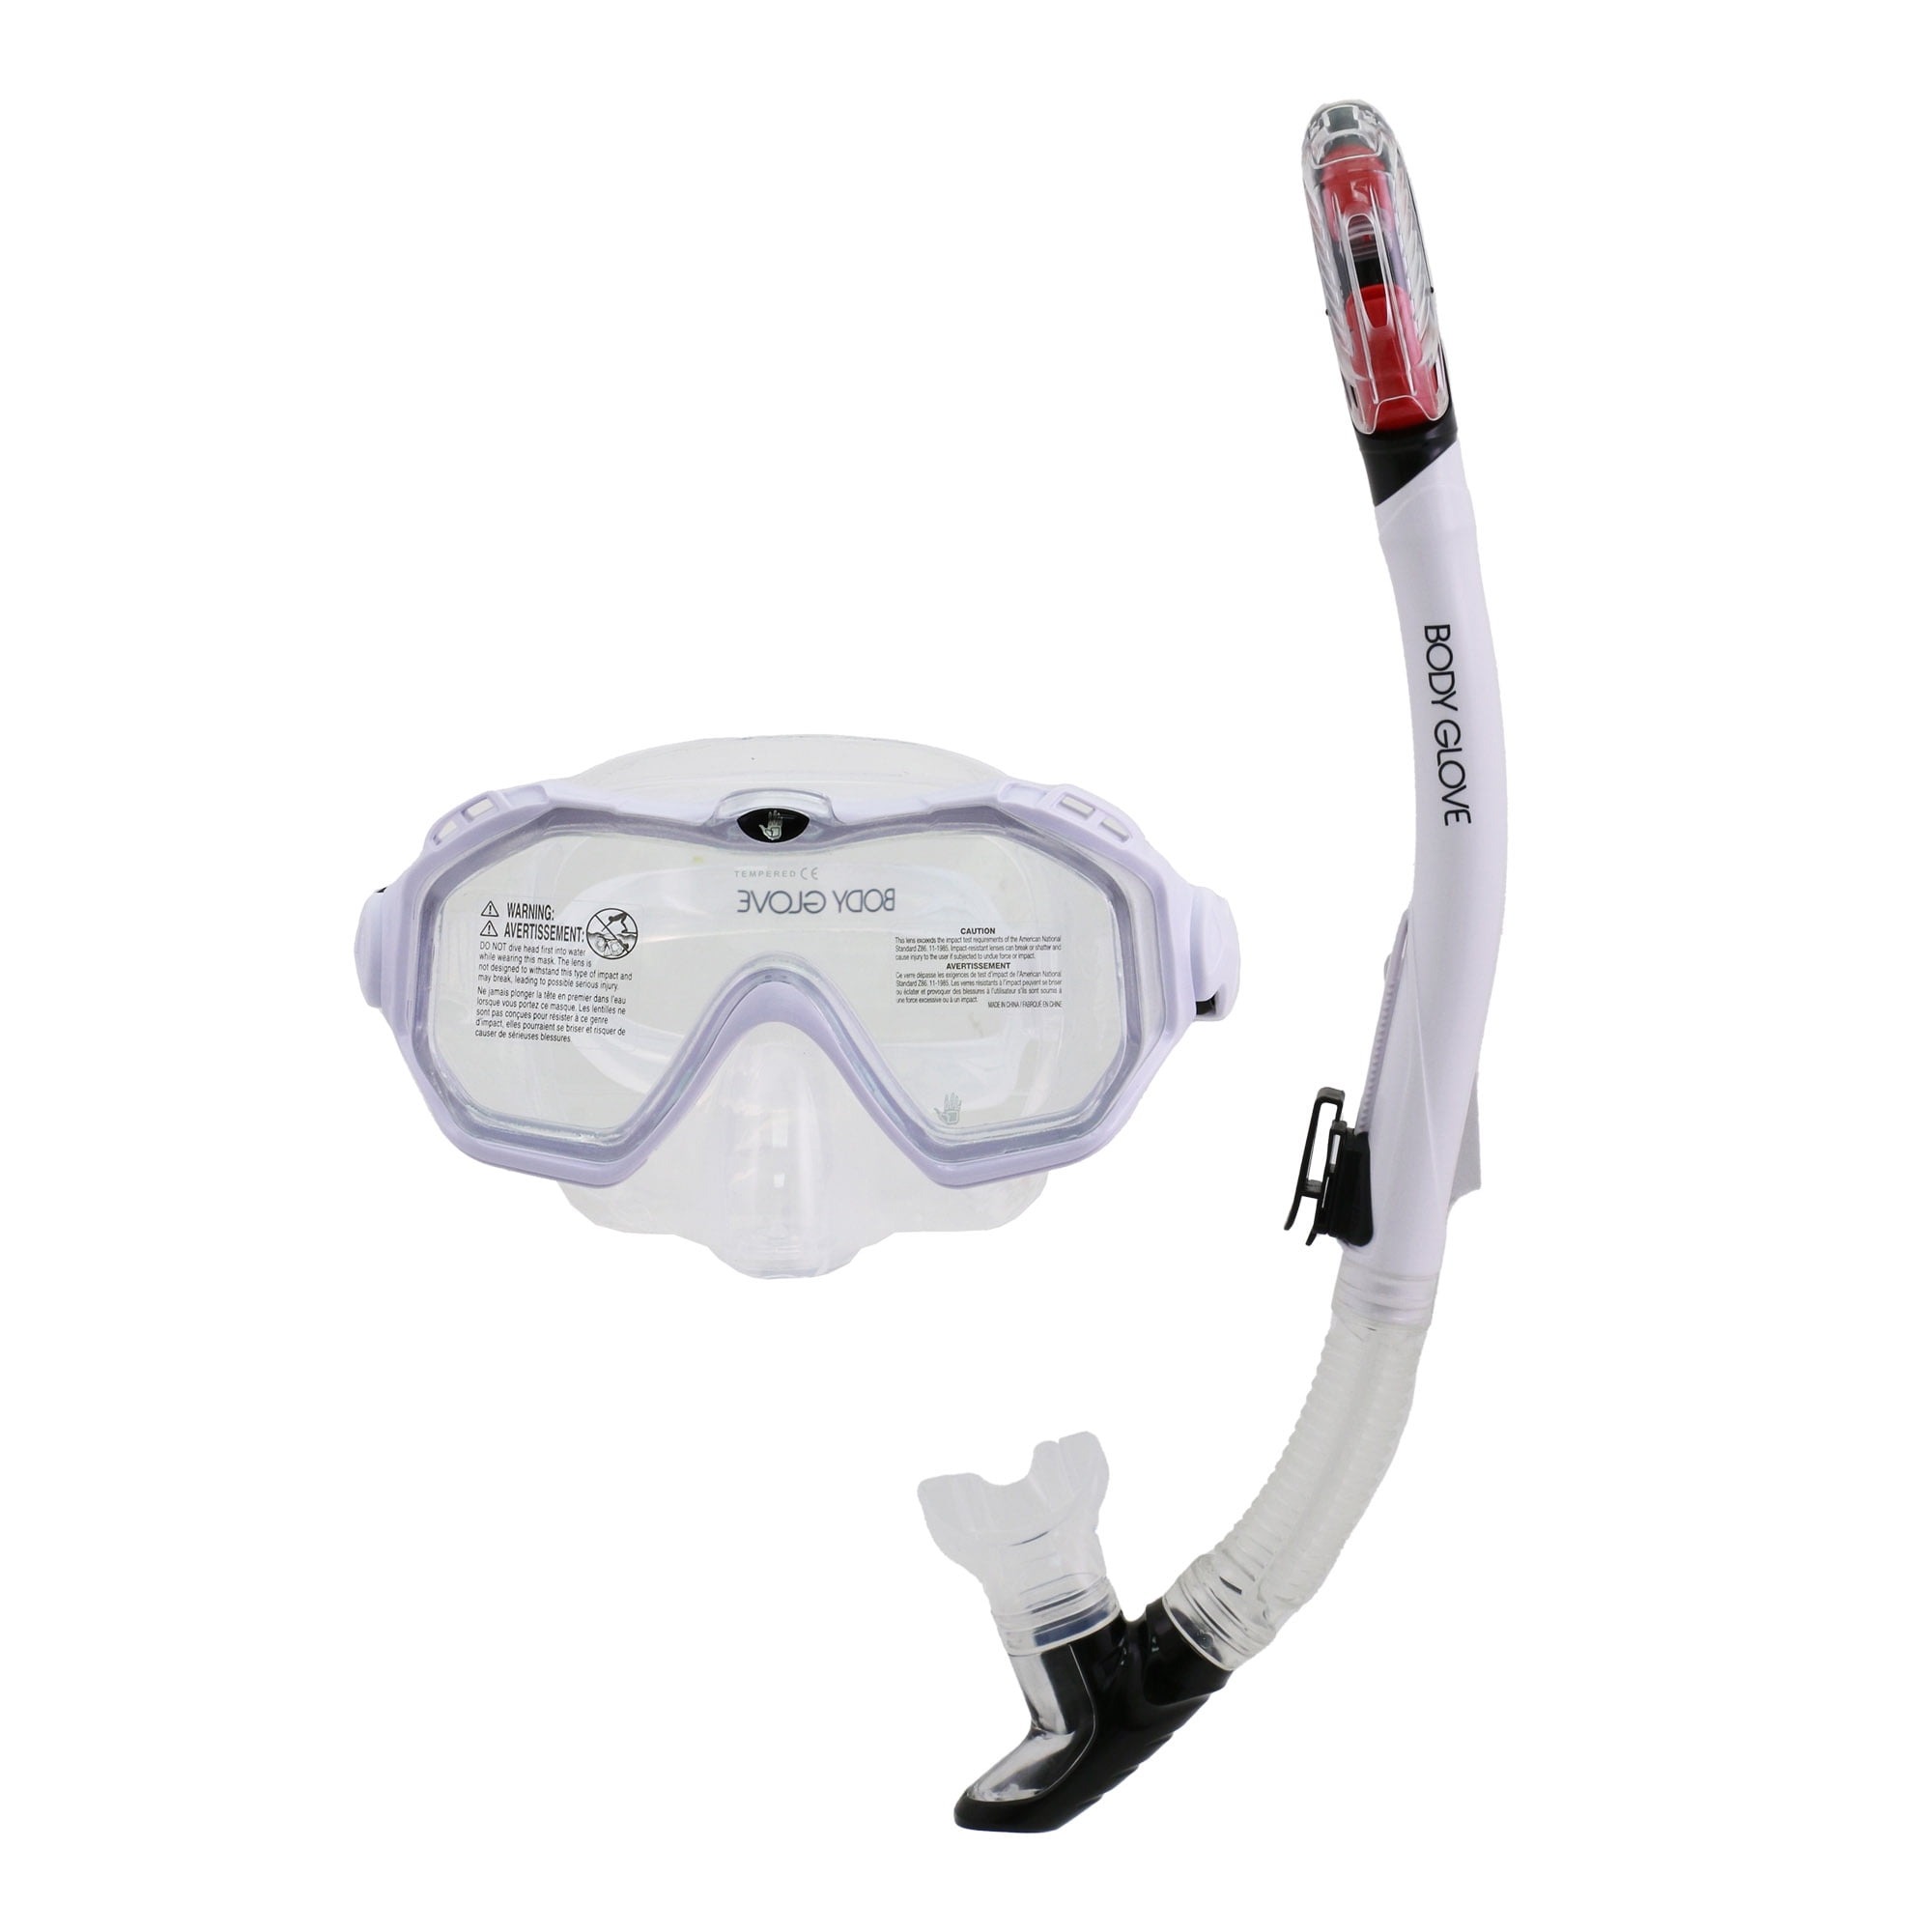 Body Glove Enlighten II Adult Diving Mask Snorkel Combo Camera Mount on Snorkel  882930196967 